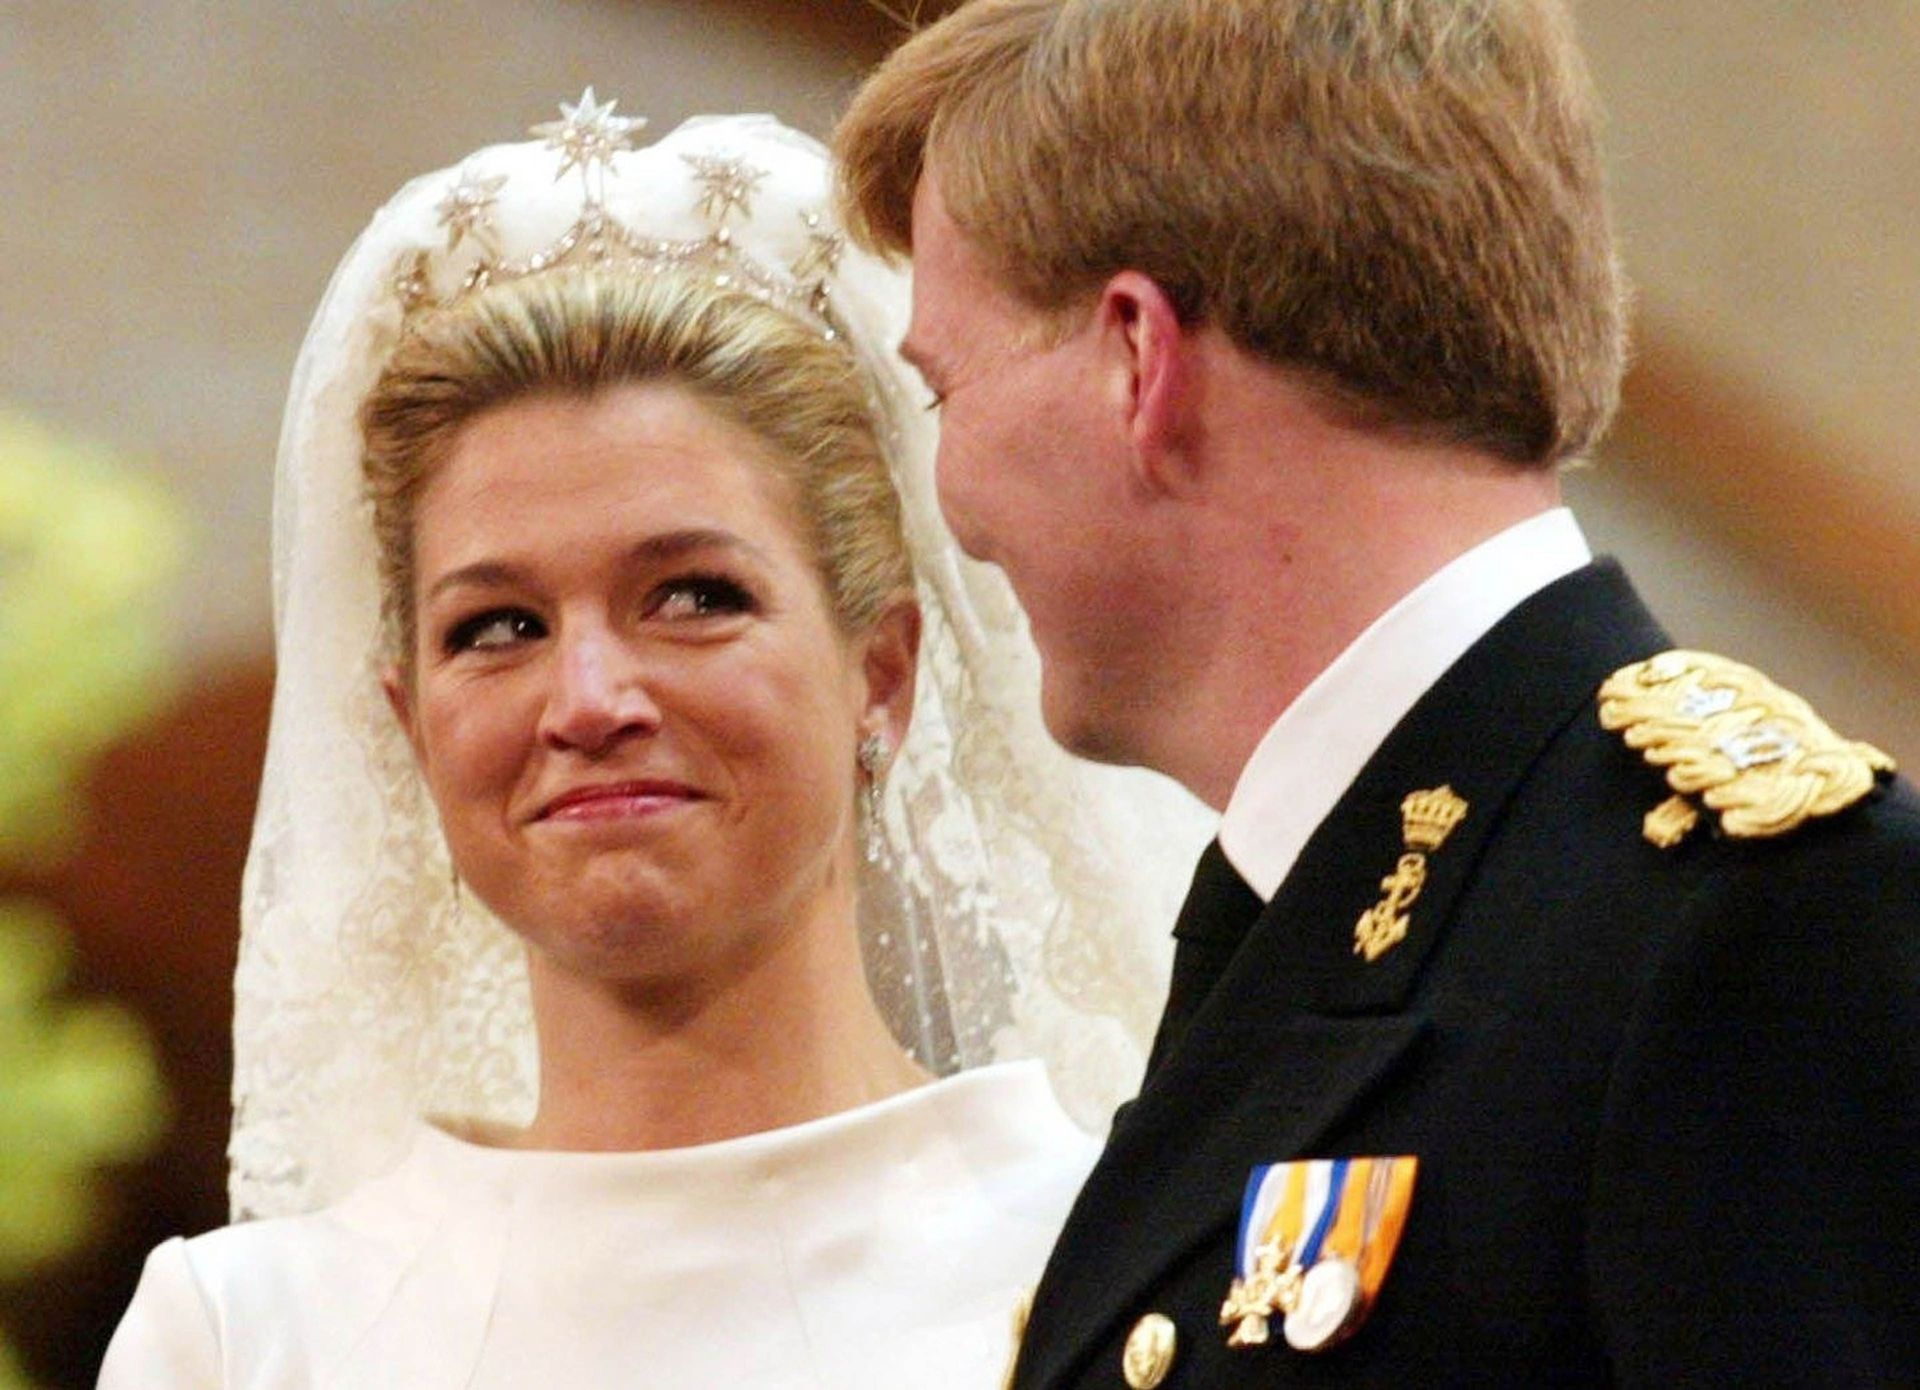 2002 - Máxima geeft in de Beurs van Berlage met tranen in haar ogen haar ja-woord aan Willem-Alexander.